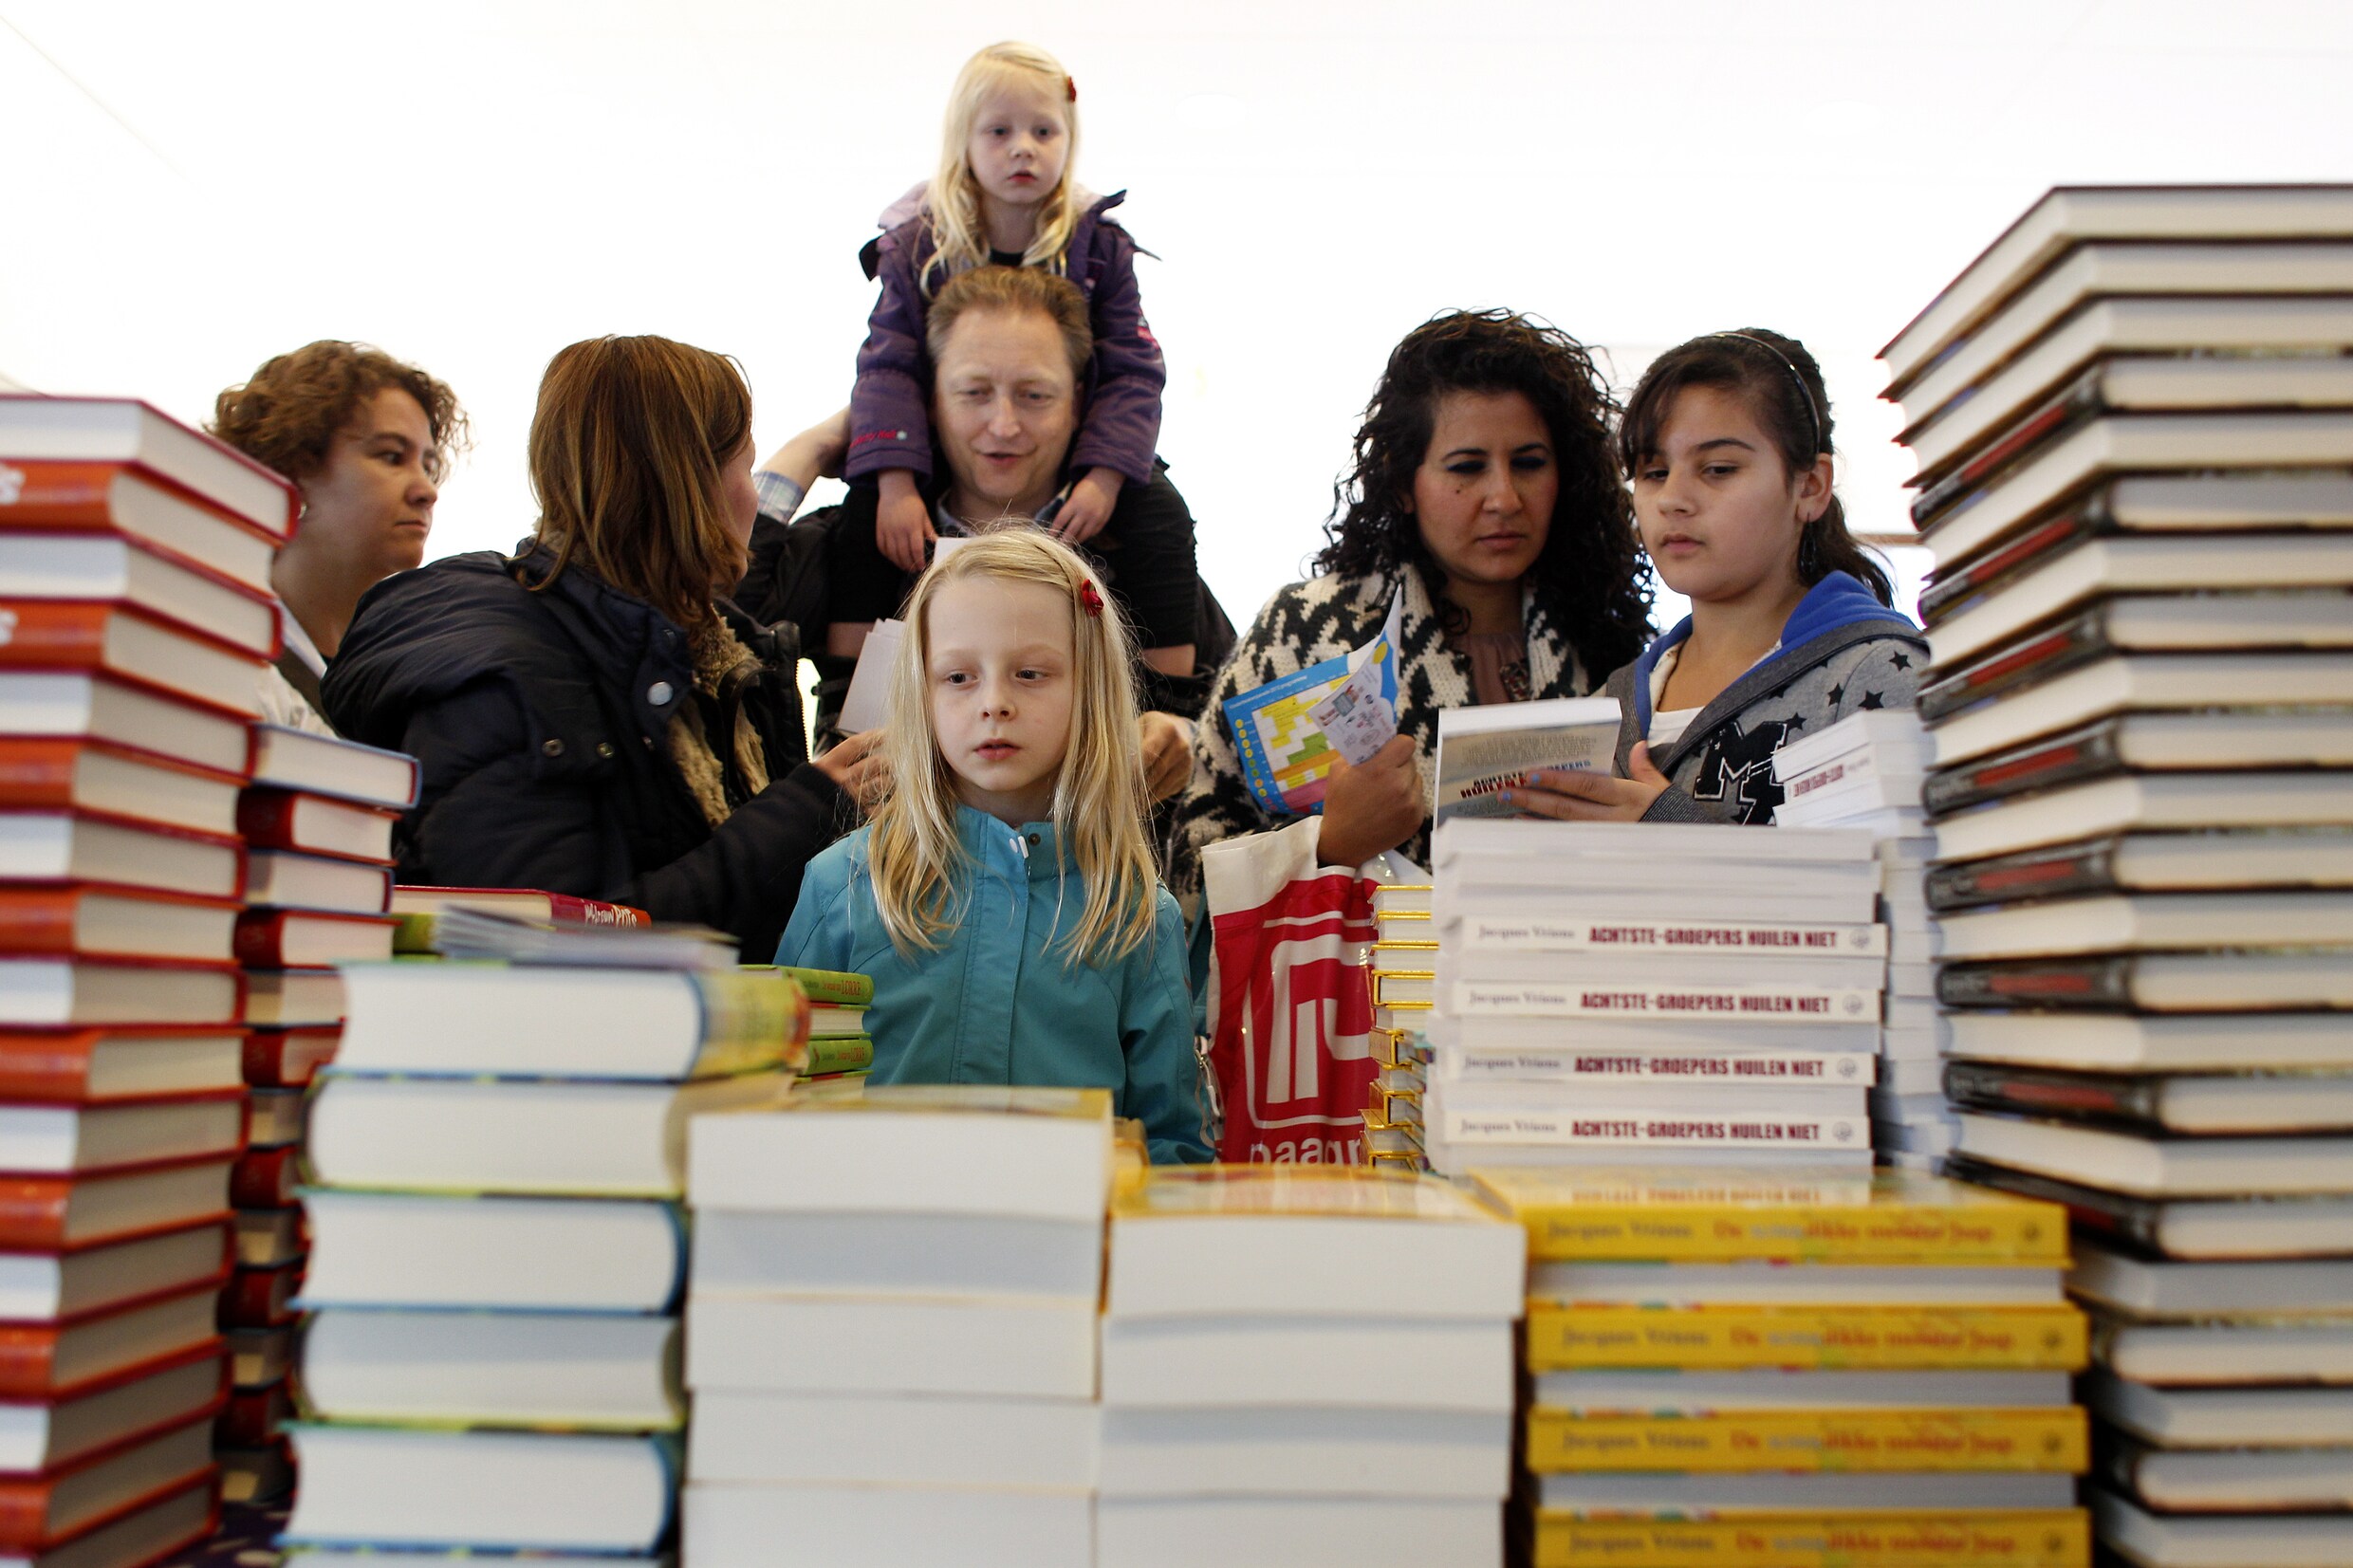 Leest de jeugd nog? Verkoop kinderboeken kent forse daling